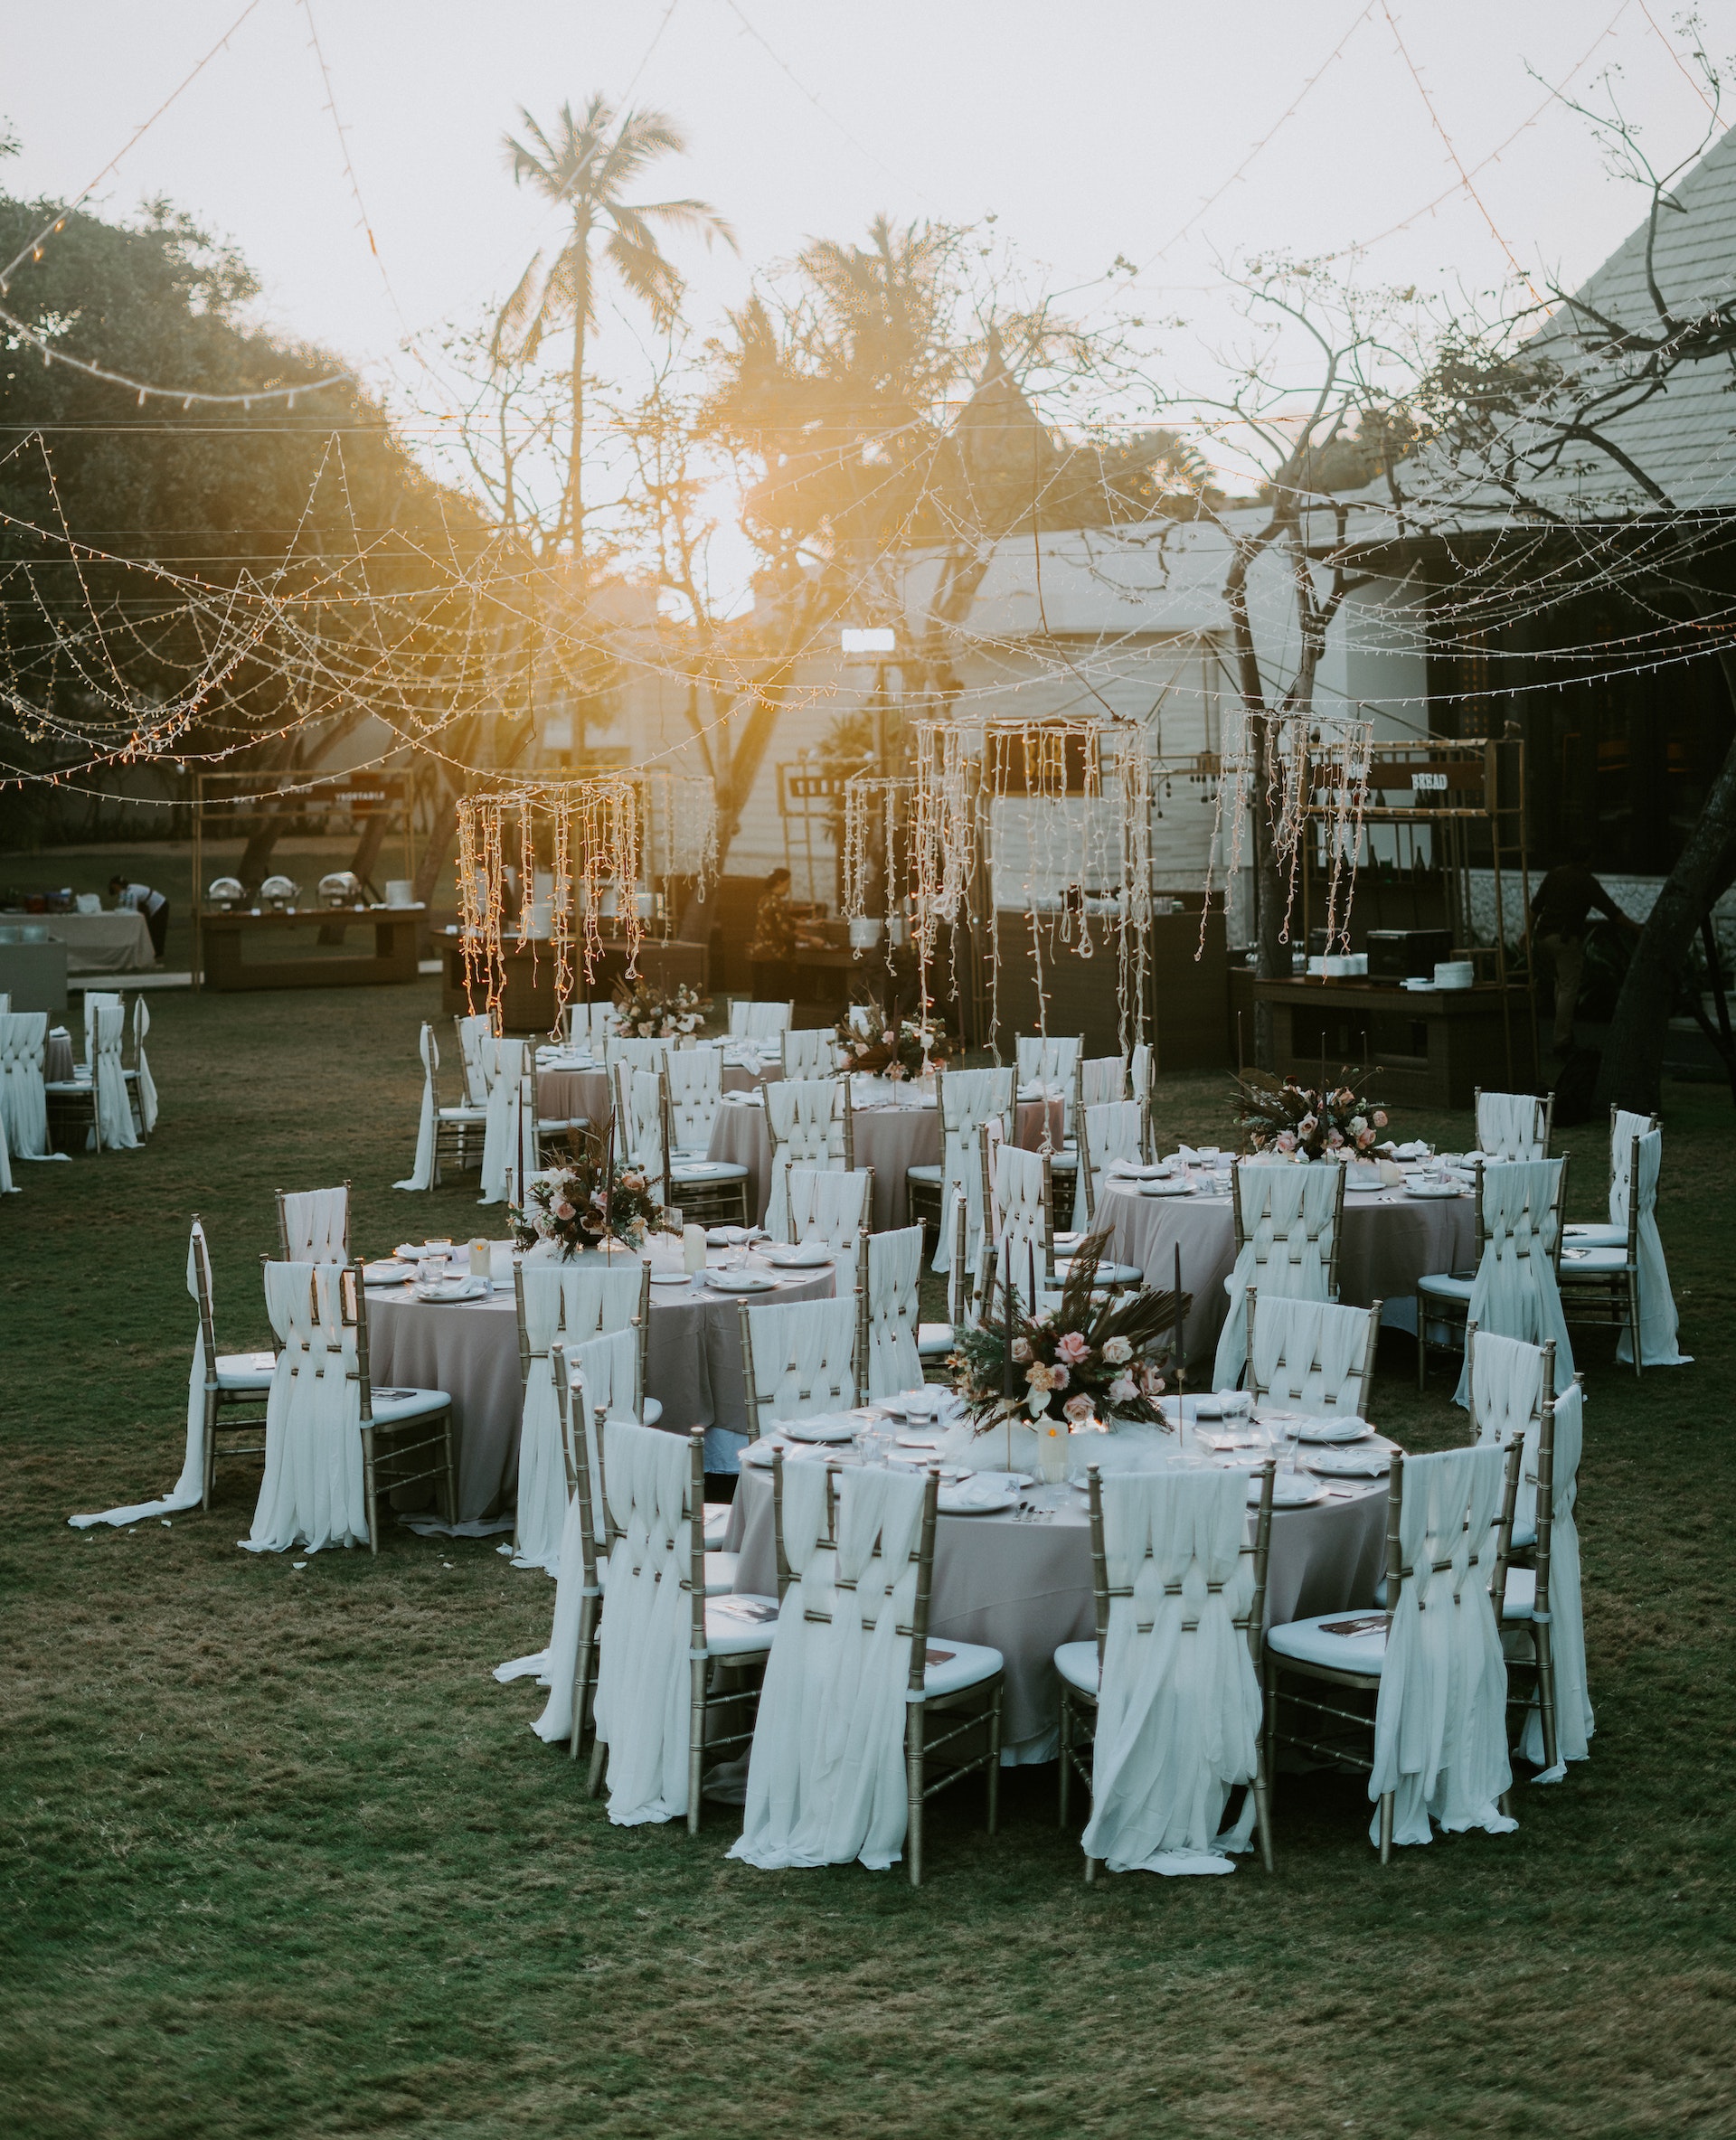 Arrangements für eine Hochzeit im Freien | Quelle: Pexels